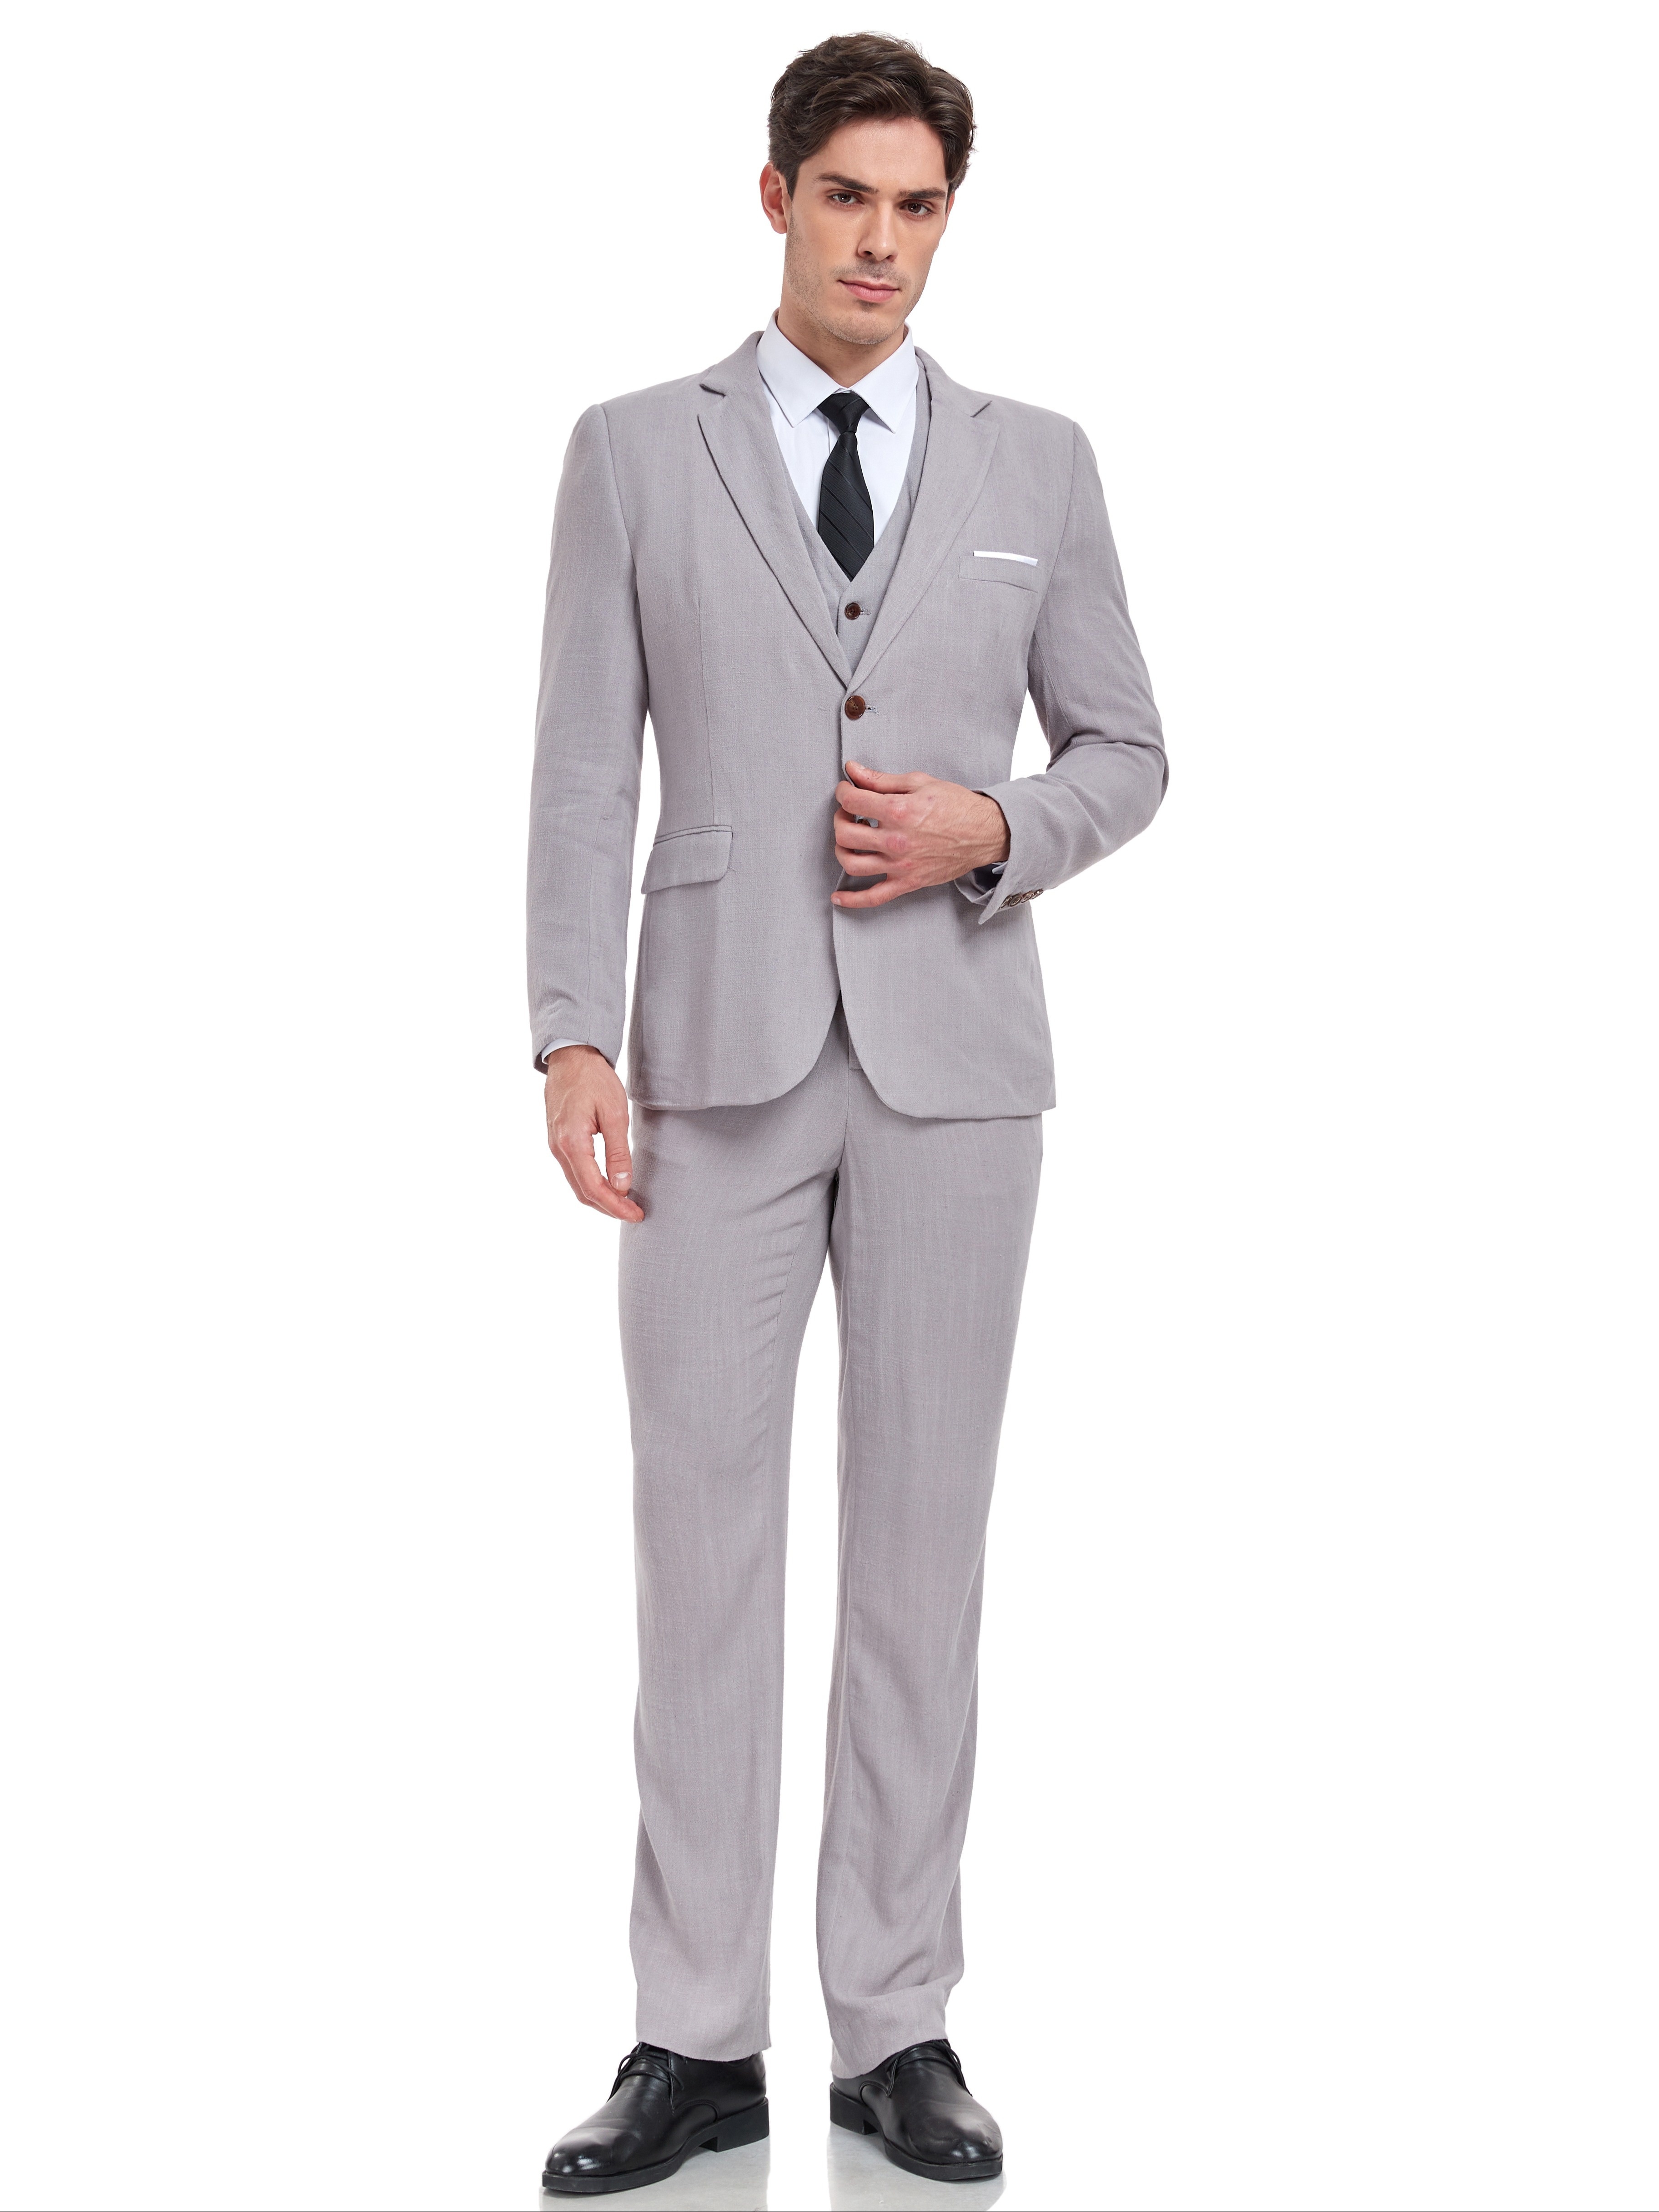 SUITS VIENNA® Kleiderbügel Anzug; Set für Sakko/Blazer und Hose; 4